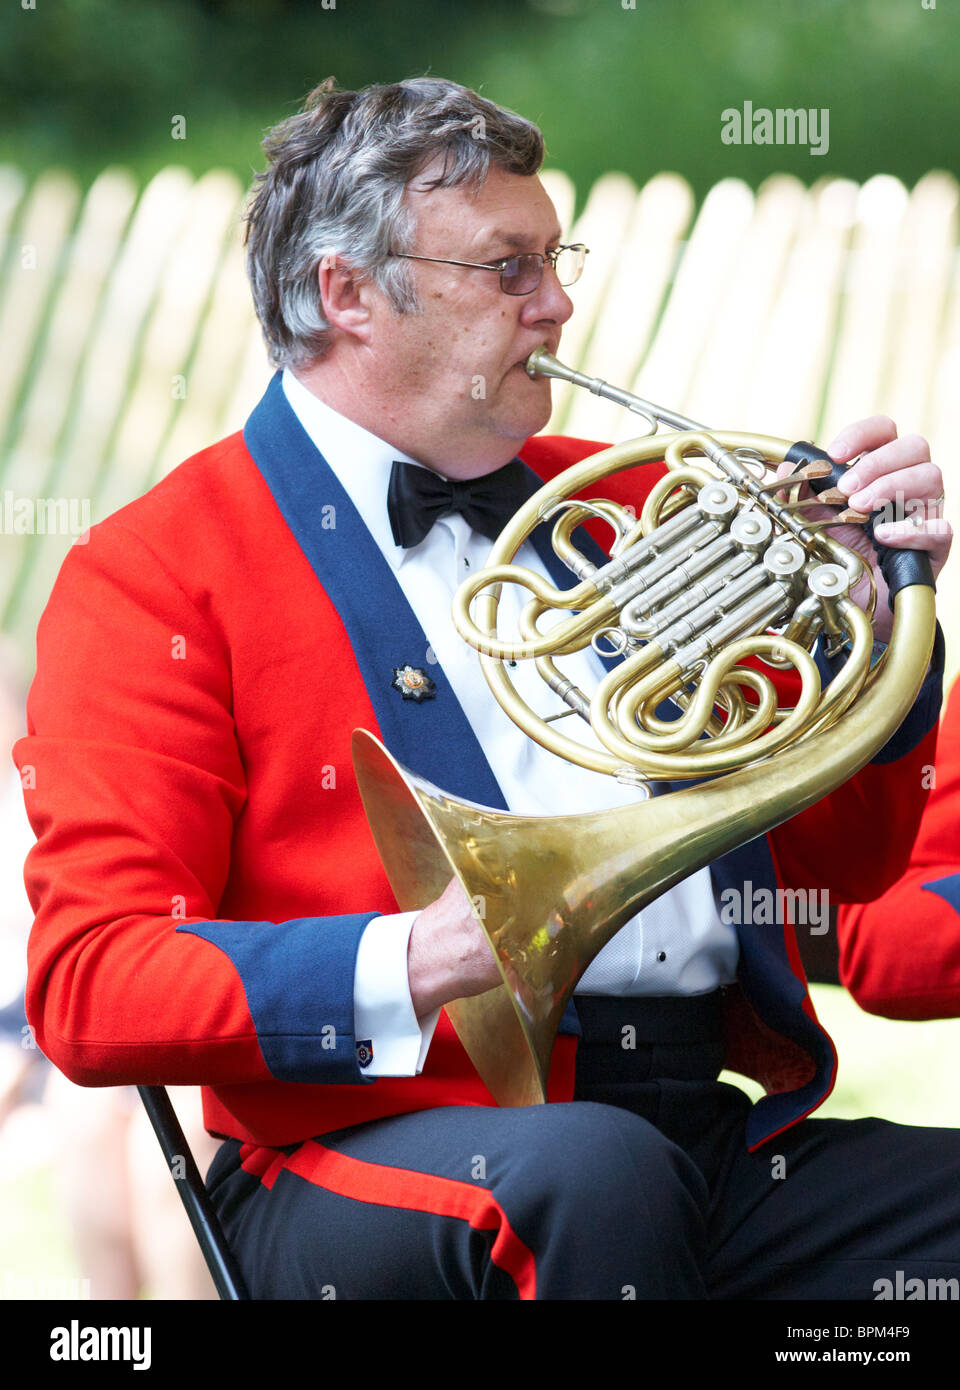 L'uomo gioca il corno francese in un tradizionale gruppo di ottoni al Chelsea Flower Show London REGNO UNITO Foto Stock